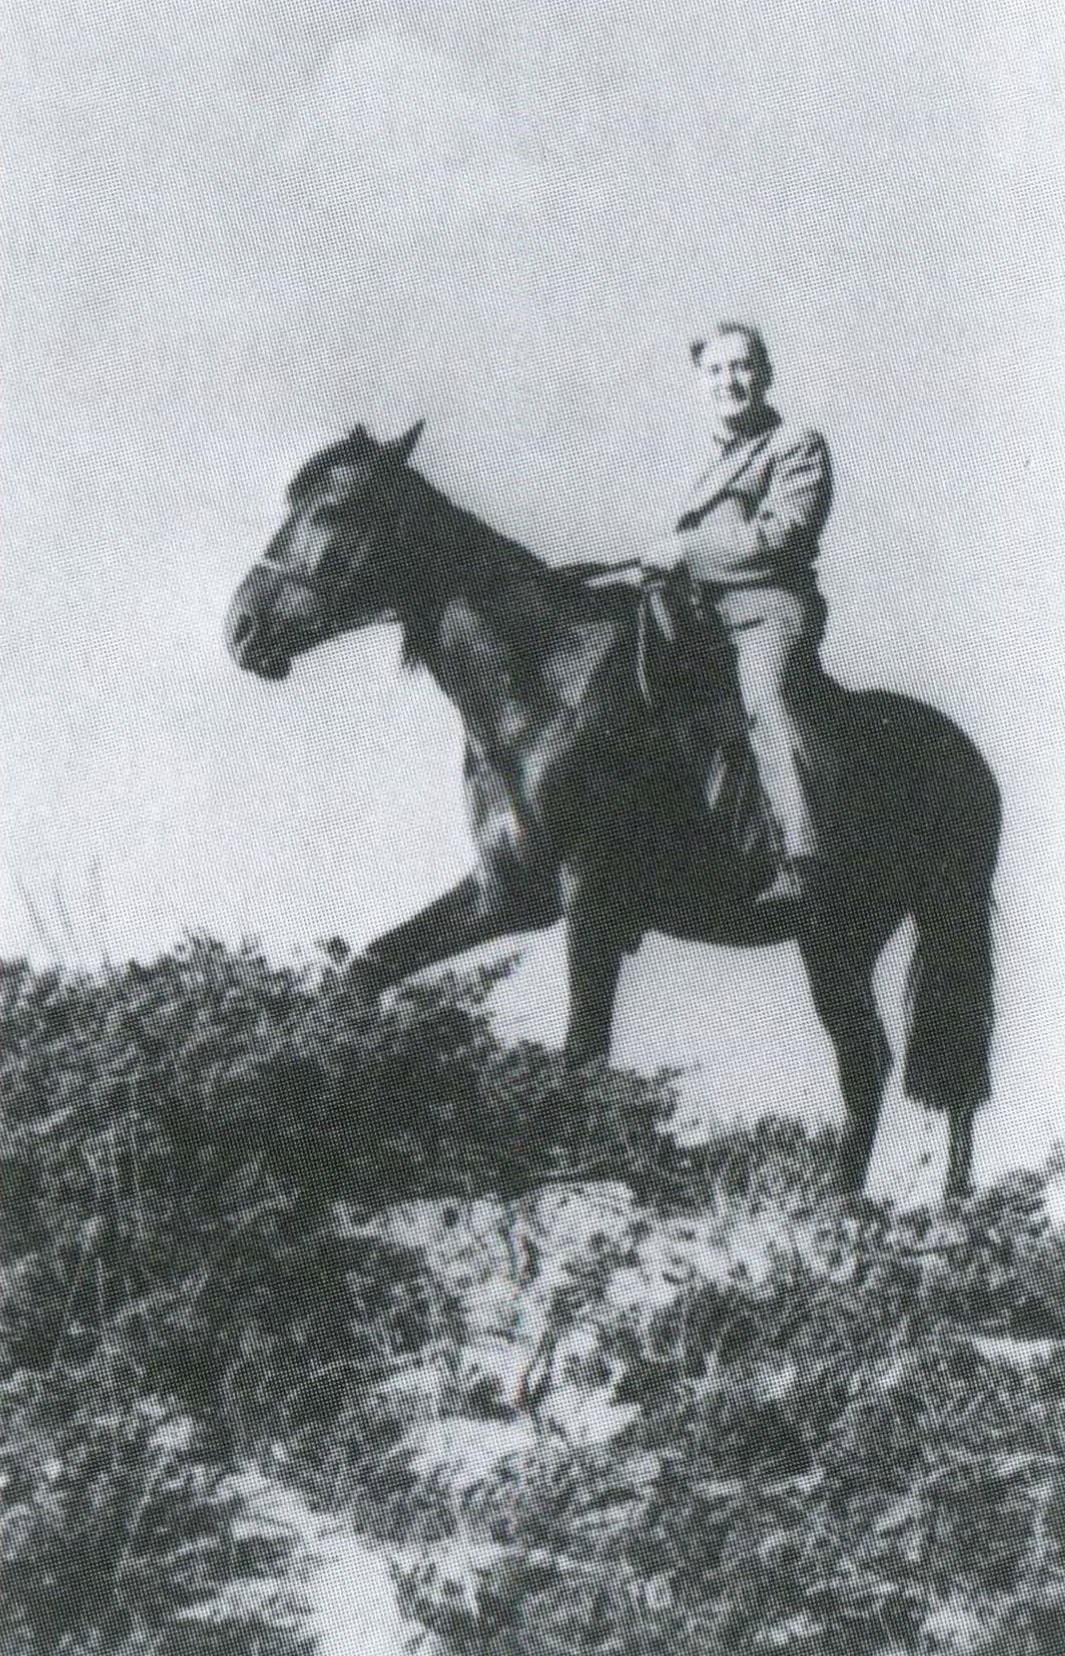 В экспедиции. 1964. Гумилёв-младший не был таким лихим кавалеристом, как отец, но крепко сидел в седле.